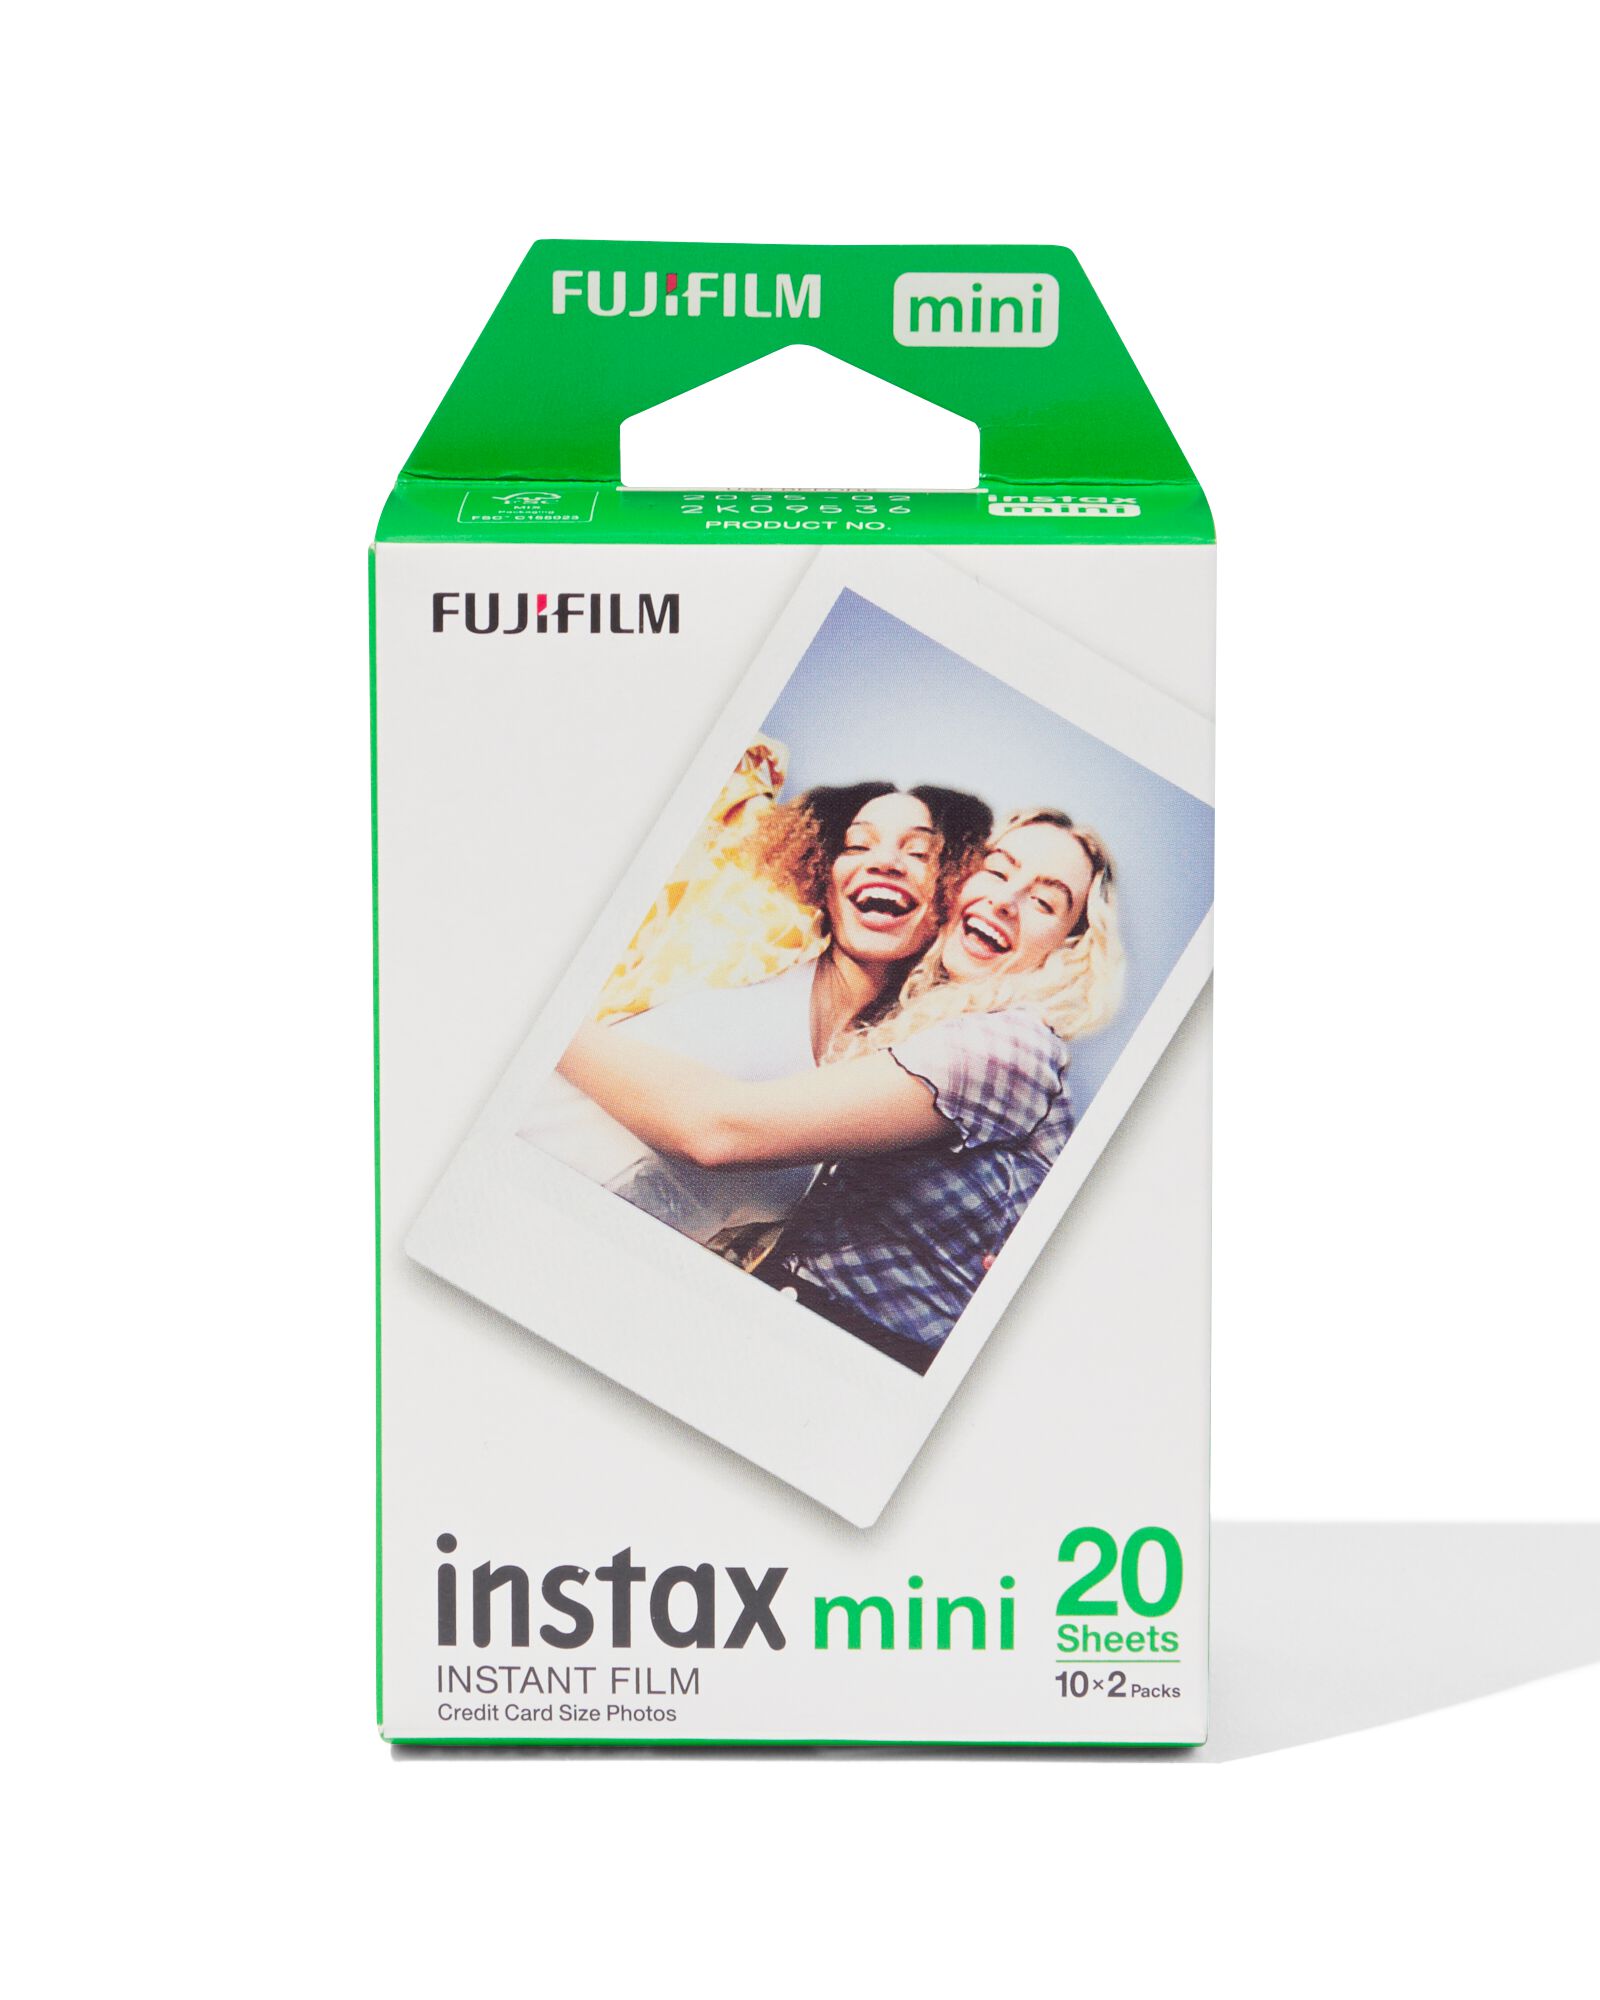 Papier photo instantané Polaroid 600 FILM COULEUR TRIPLE PACK (24 poses)  sur